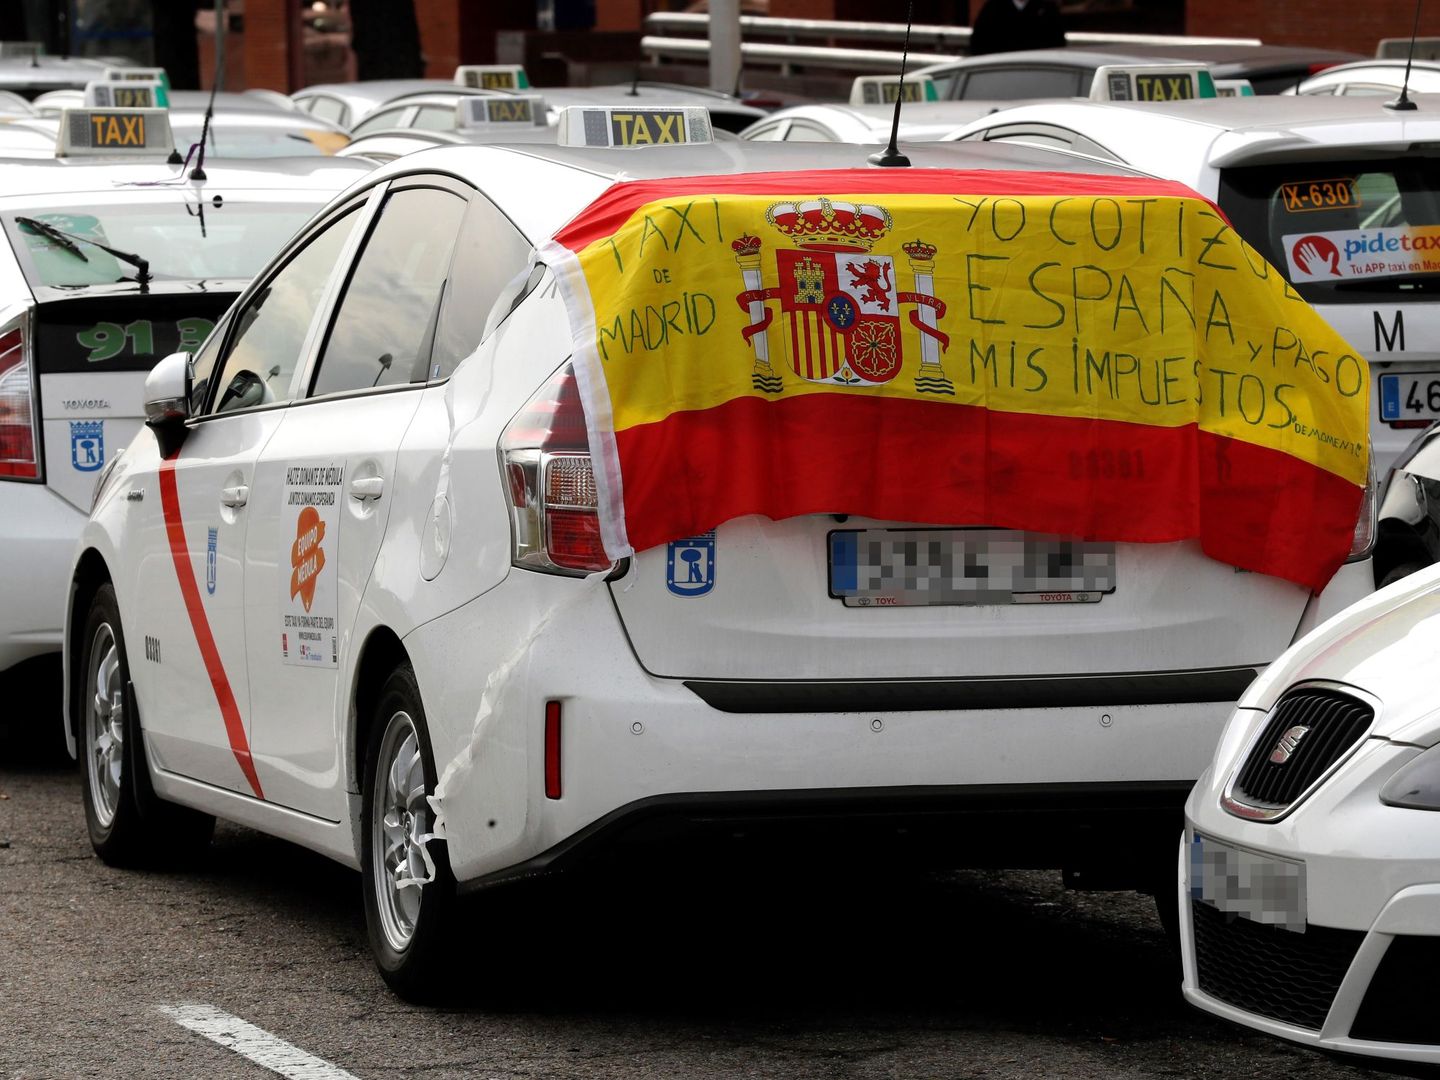 GRAF2705. MADRID, 22 01 2019.- Concentración de taxistas en las inmediaciones del recinto ferial de Ifema, en Madrid, este martes, segundo día de la huelga indefinida del sector del taxi después de que las principales asociaciones del sector y la 